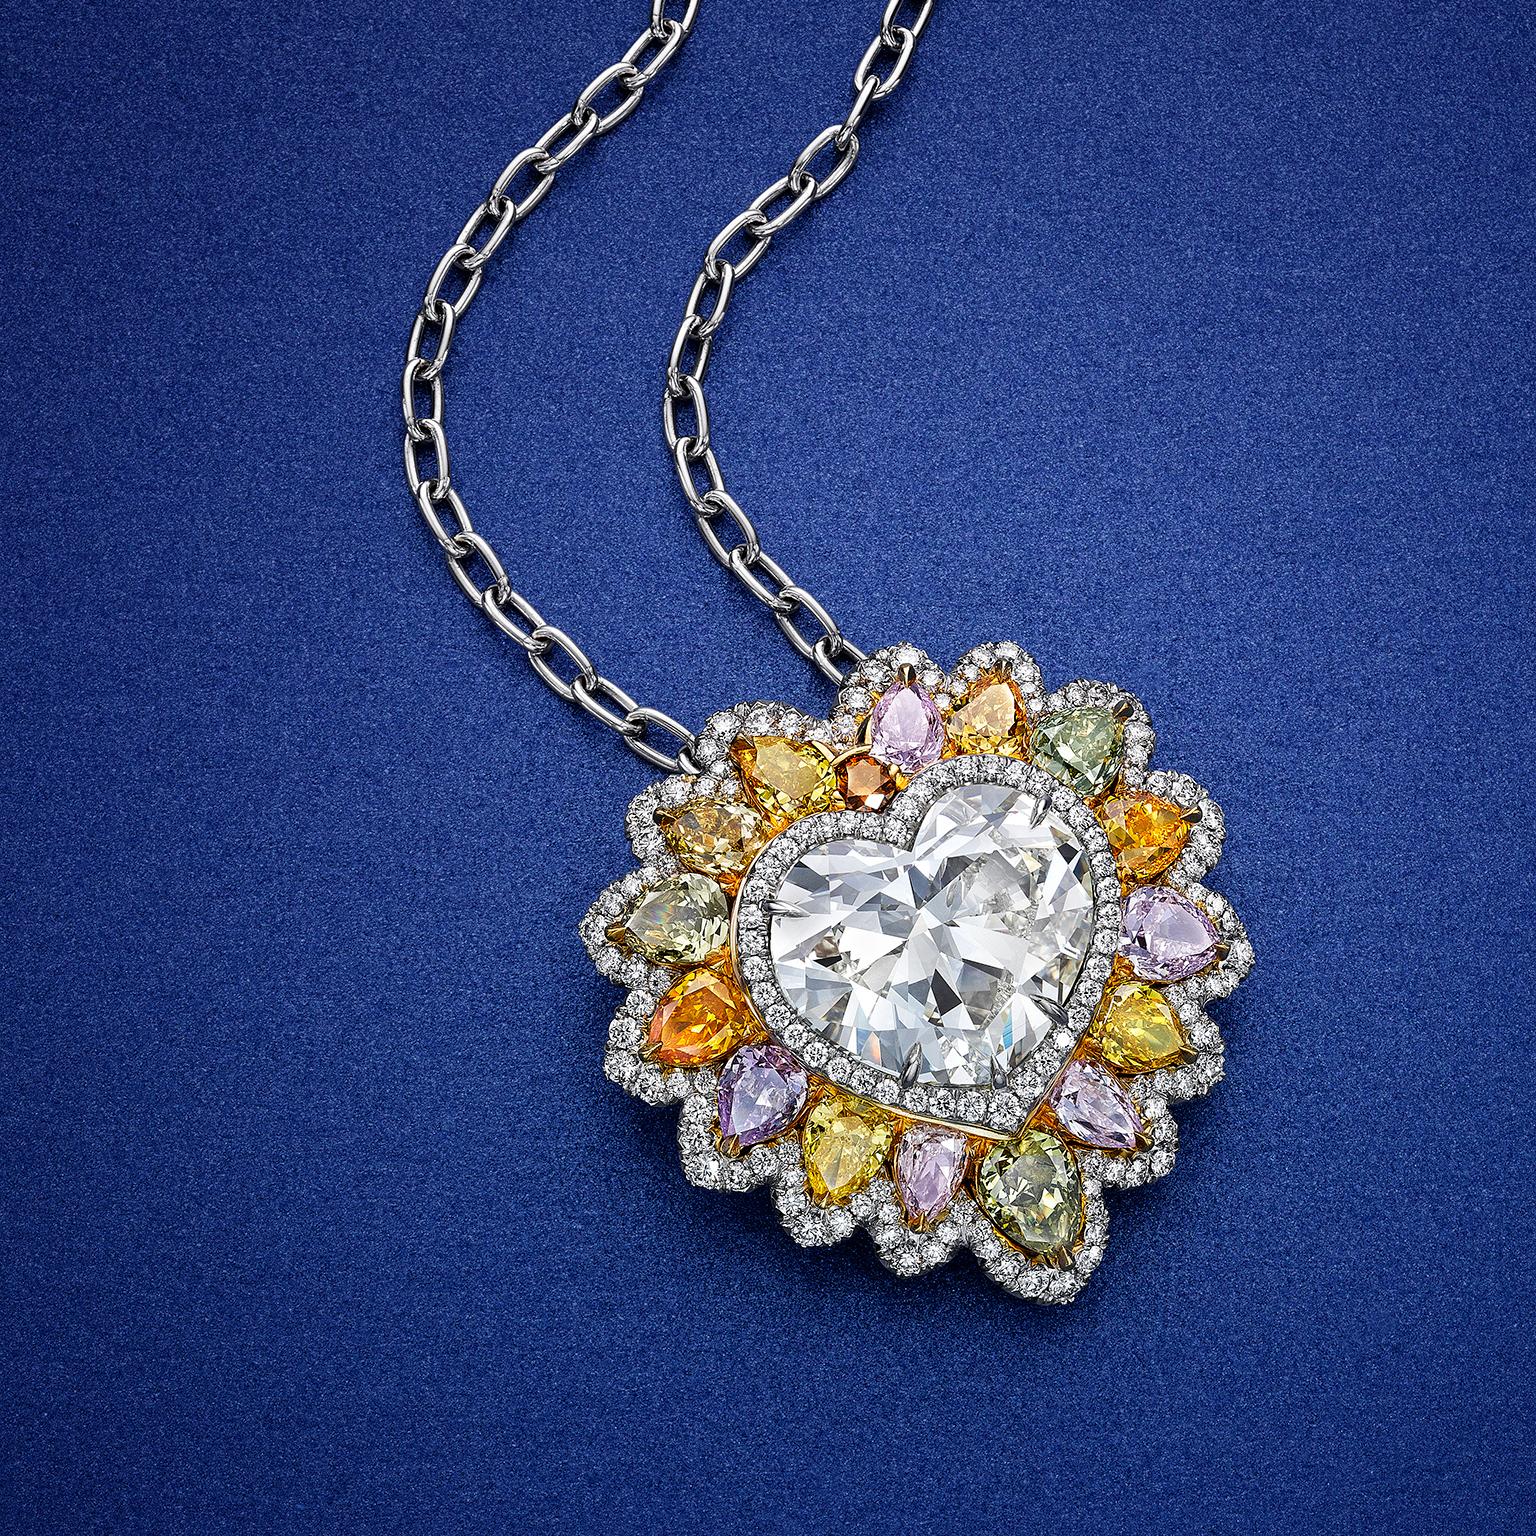 Seltene und gut gearbeitete Anhänger-Halskette mit einem GIA-zertifizierten 10,02-Karat-Diamanten in Herzform, eingefasst in einen schönen und farbenfrohen Löwenmähnen-Halo aus verschiedenfarbigen Diamanten. Abgeschlossen mit einer einzigen Reihe